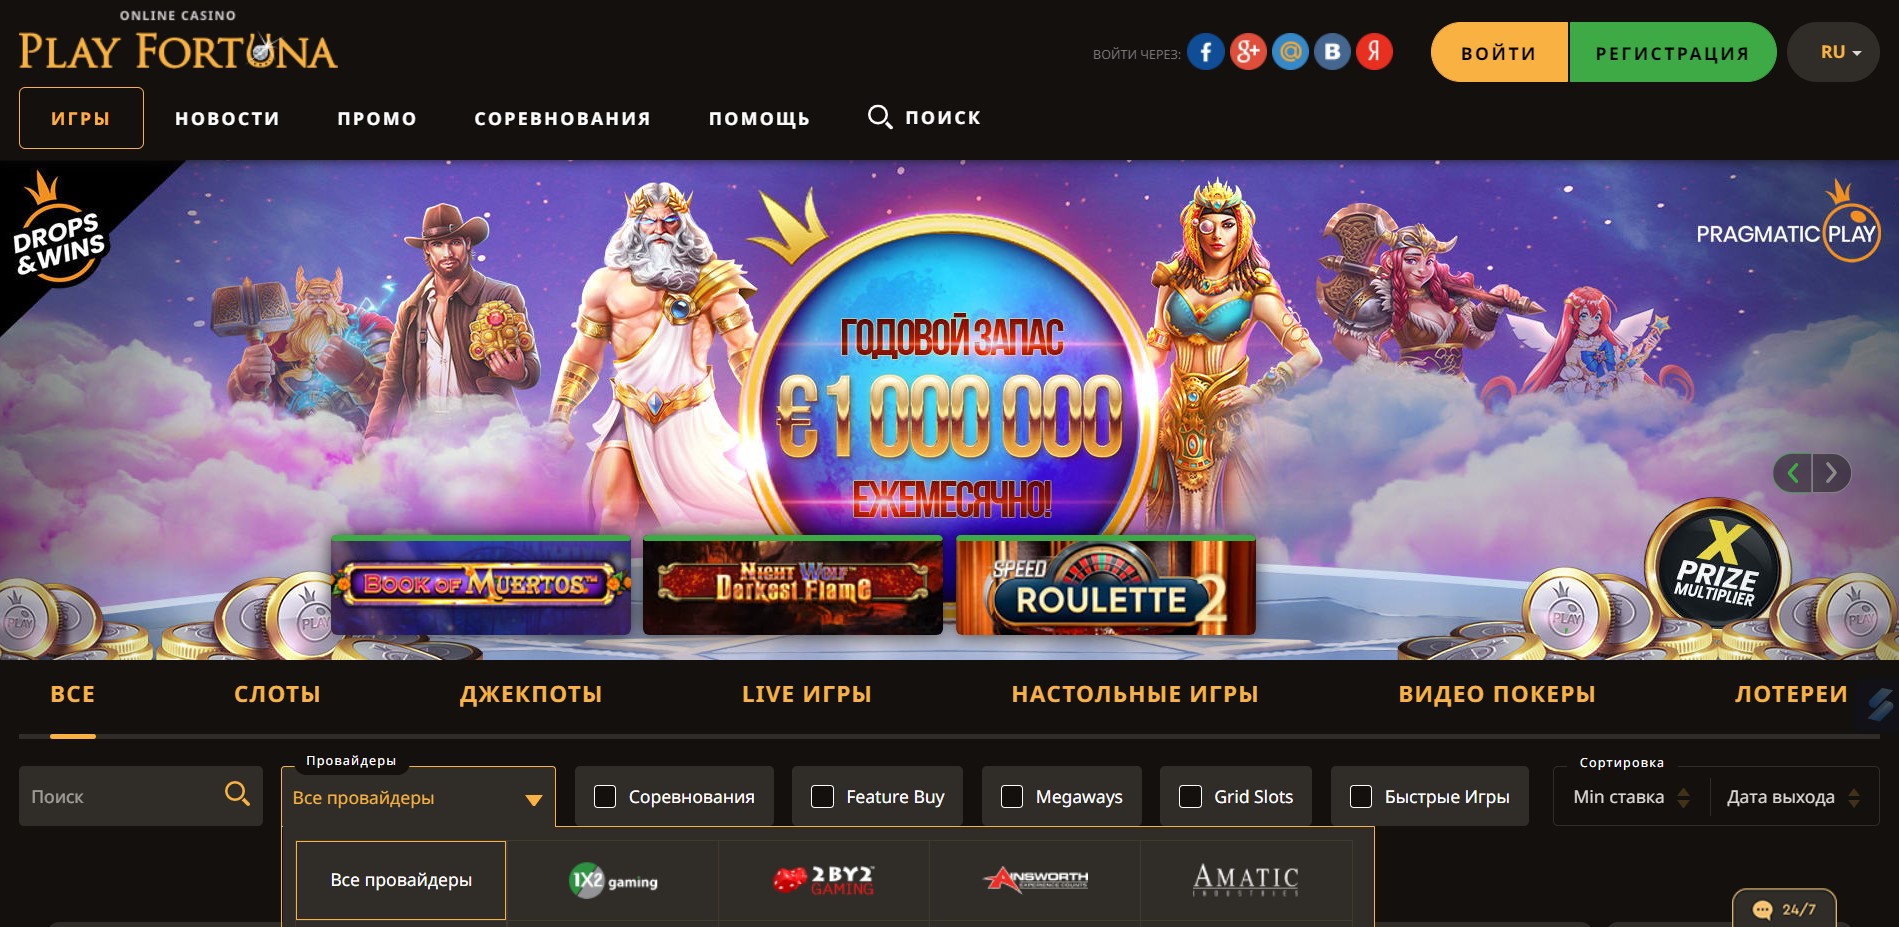 3 без вины Приключения и азарт в новом формате в Izzi Casino. советы